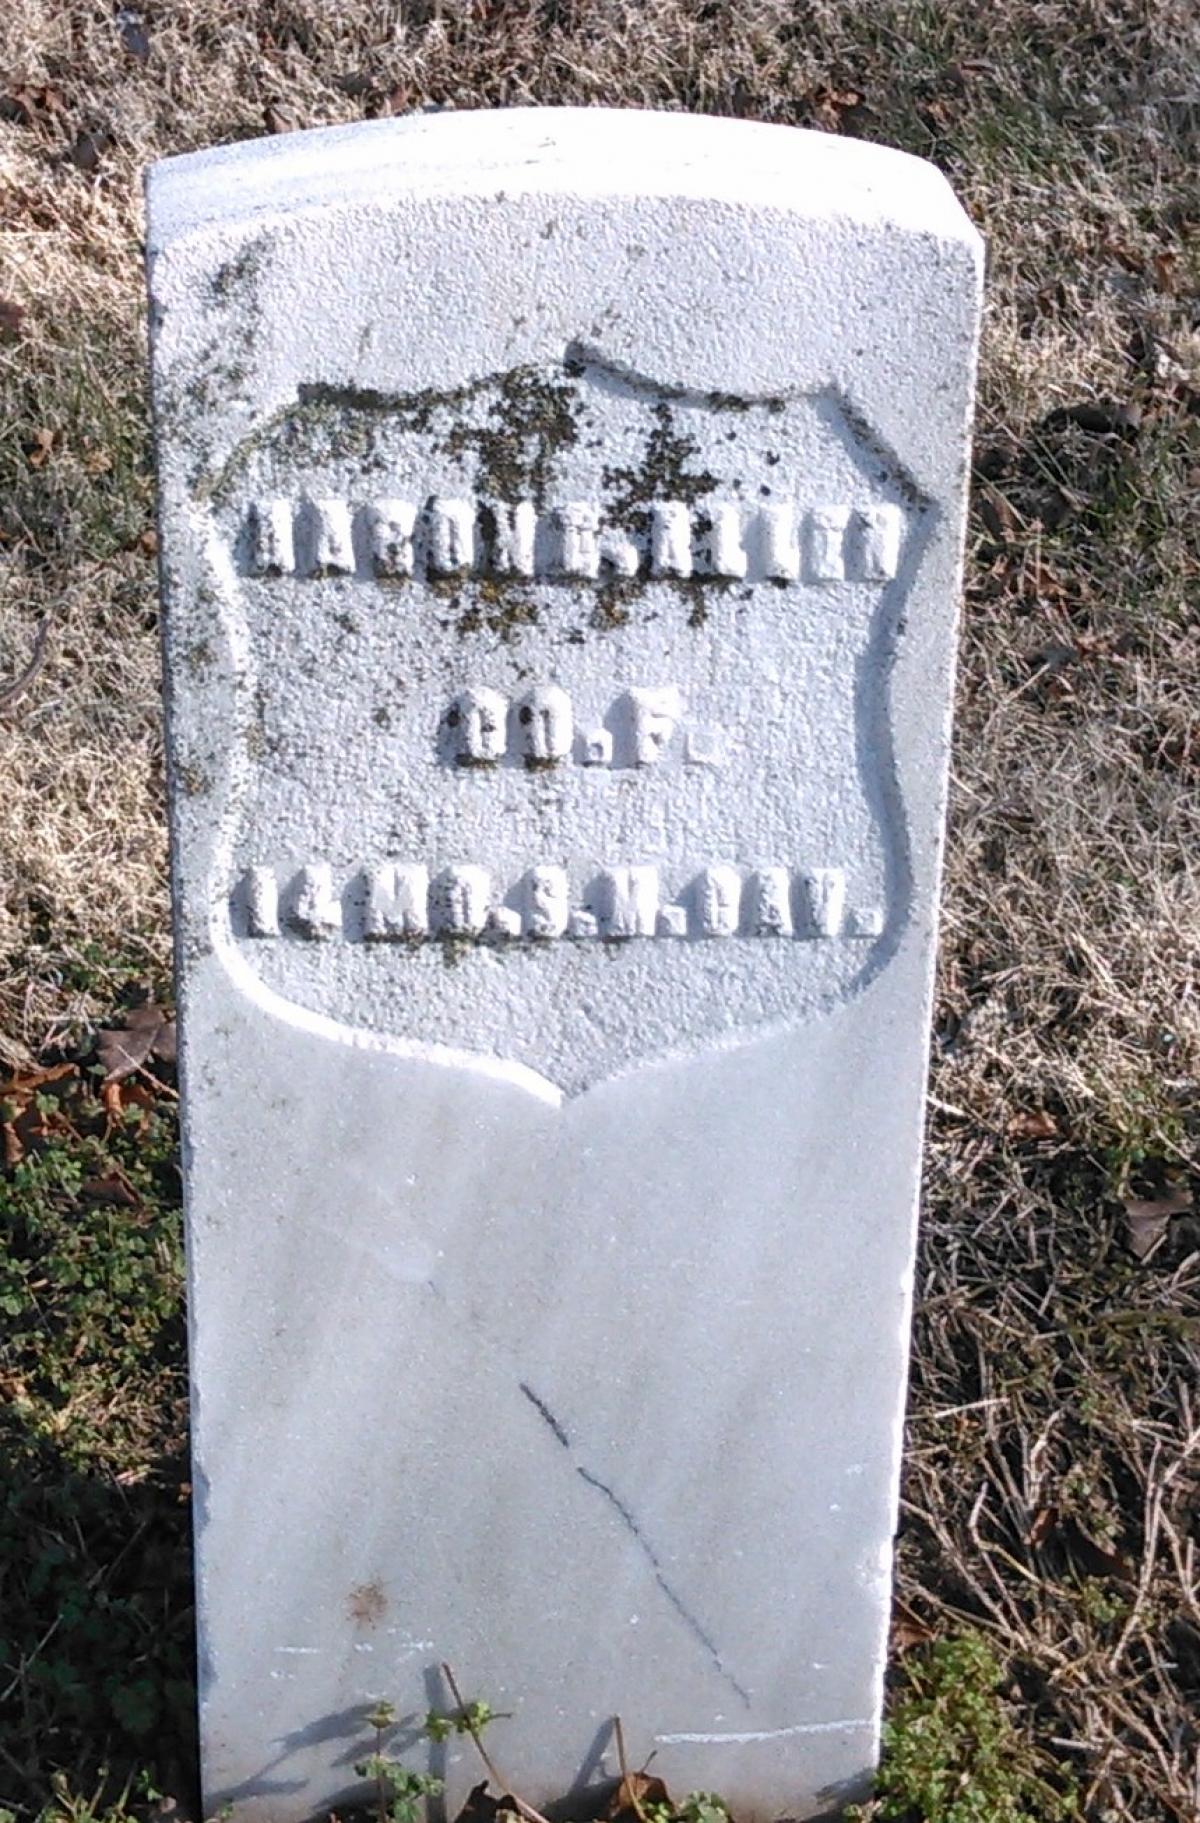 OK, Grove, Buzzard Cemetery, Allen, Aaron E. Headstone